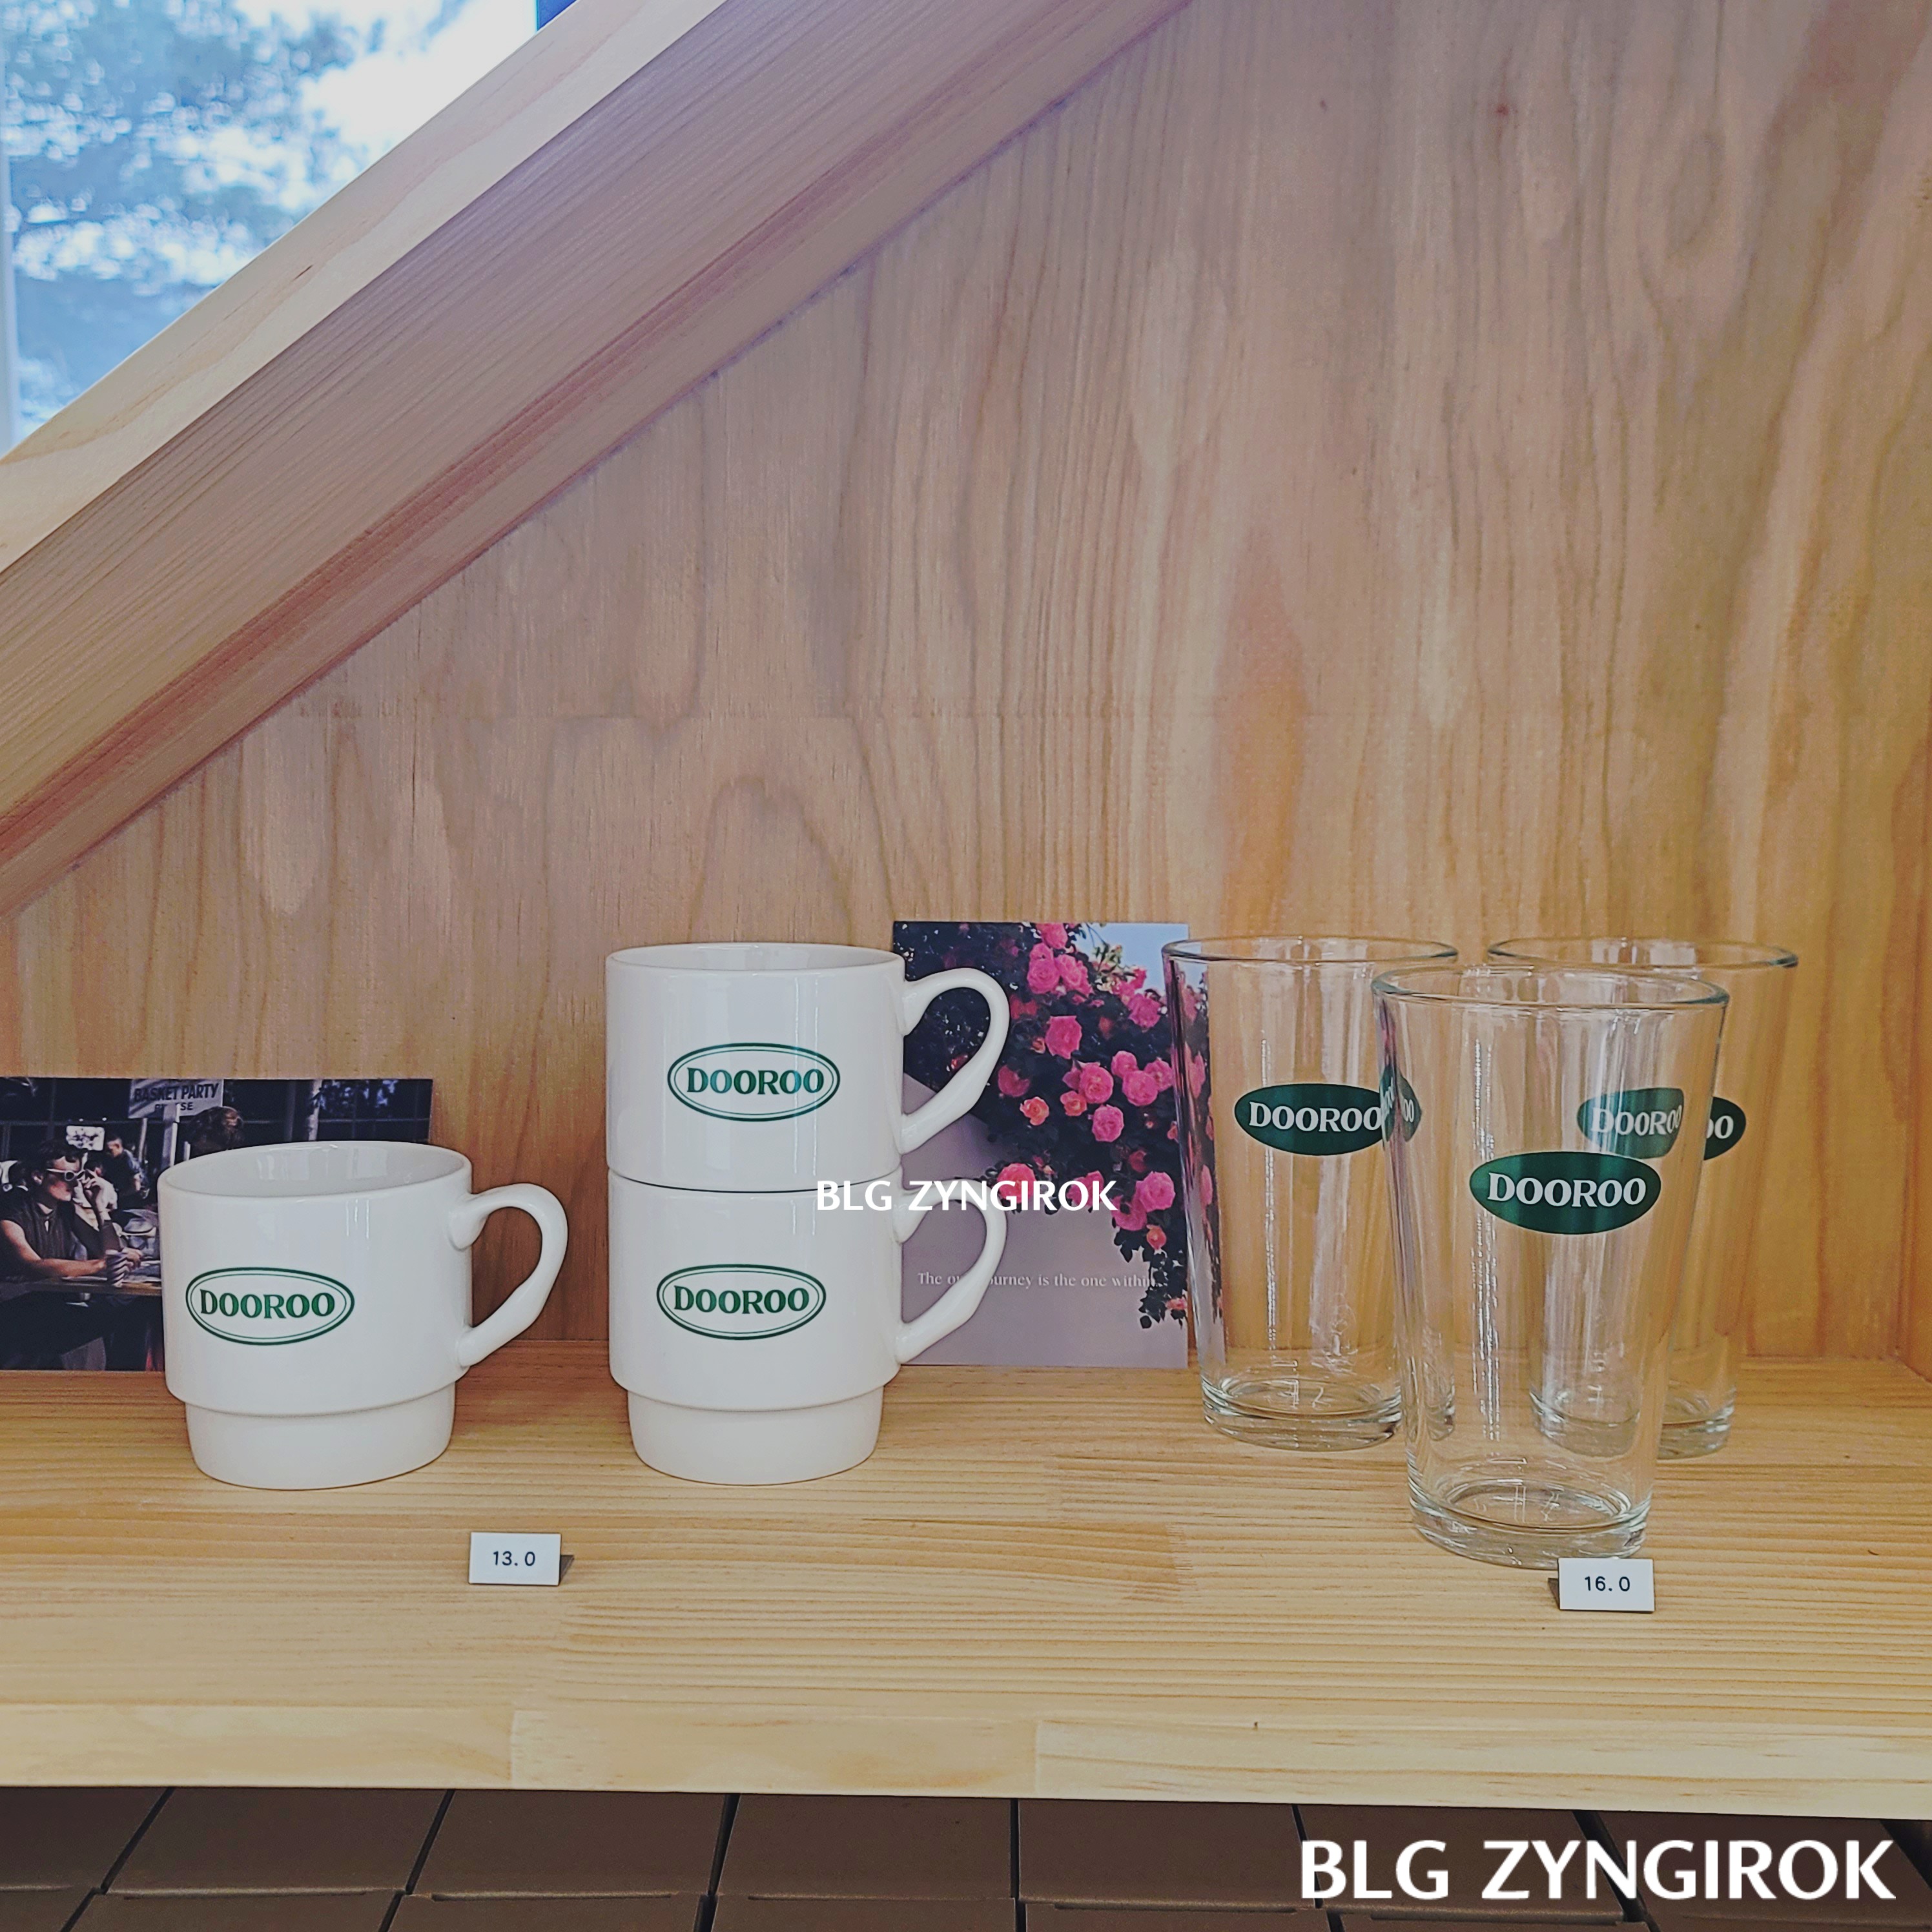 양주 카페 두루 판매중인 컵 모습이다.